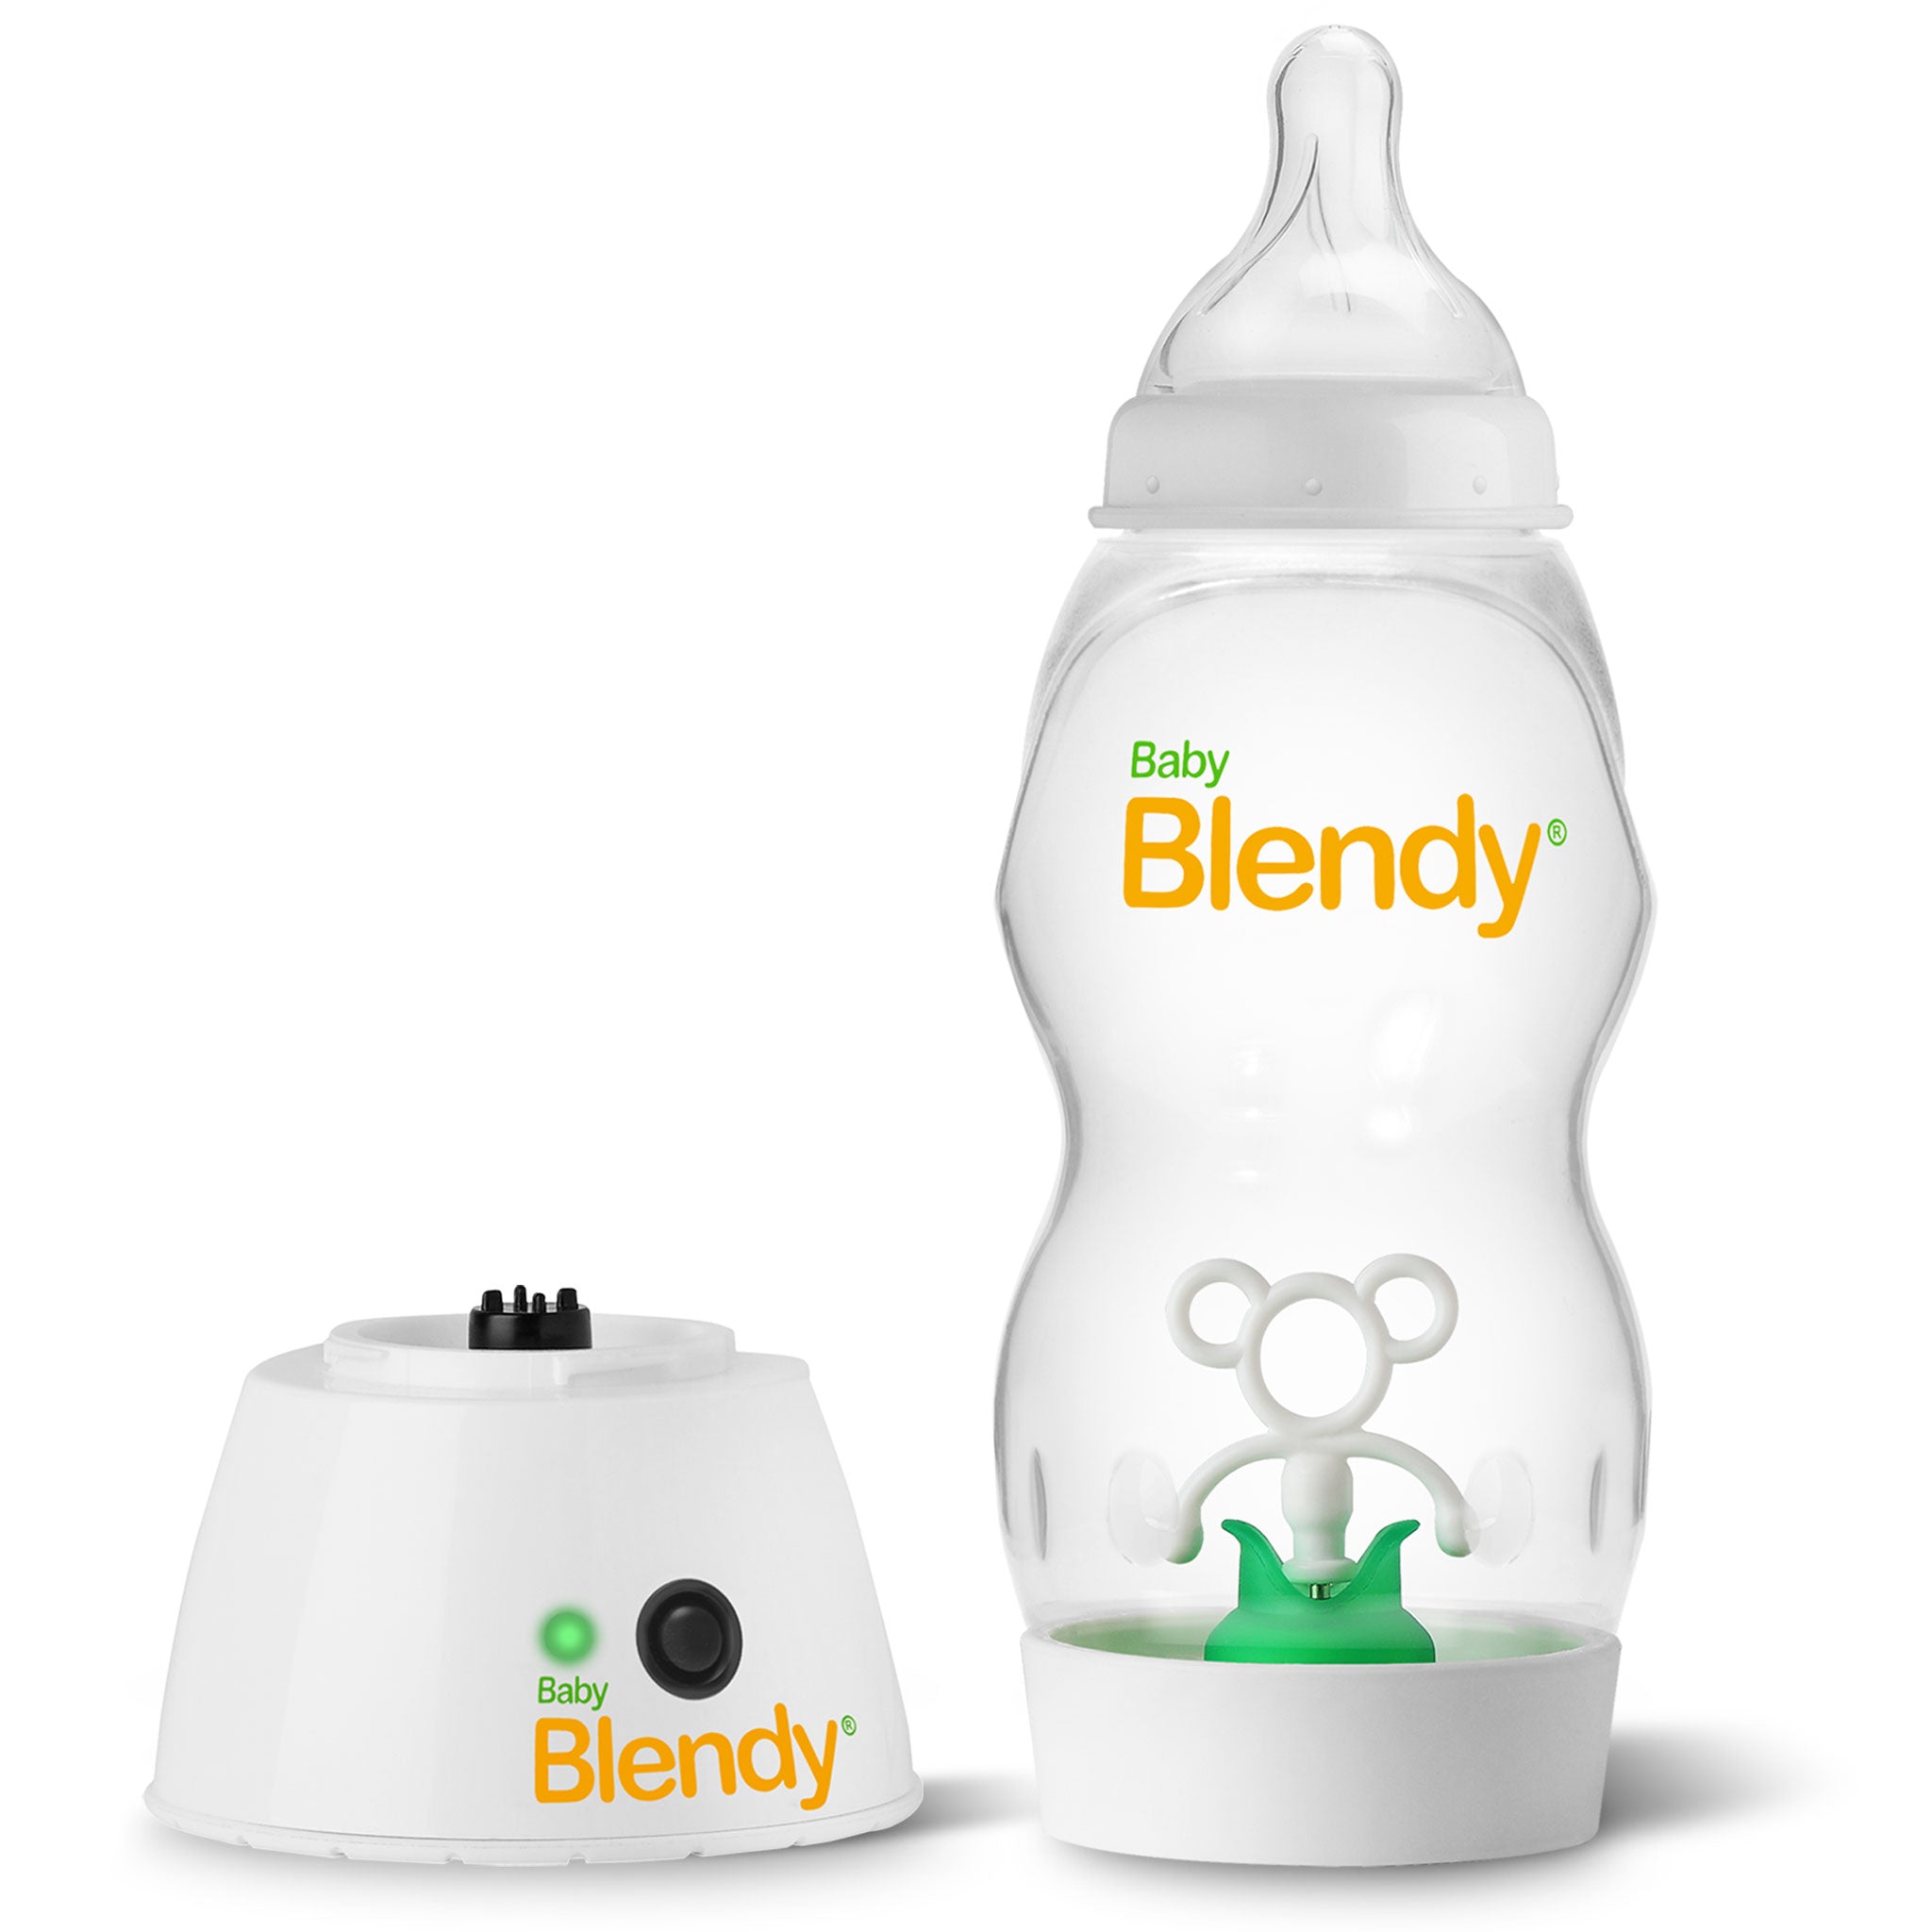 8 Oz Baby Bottle Design, Baby Girl, Baby Boy, Baby Bottle Wrap